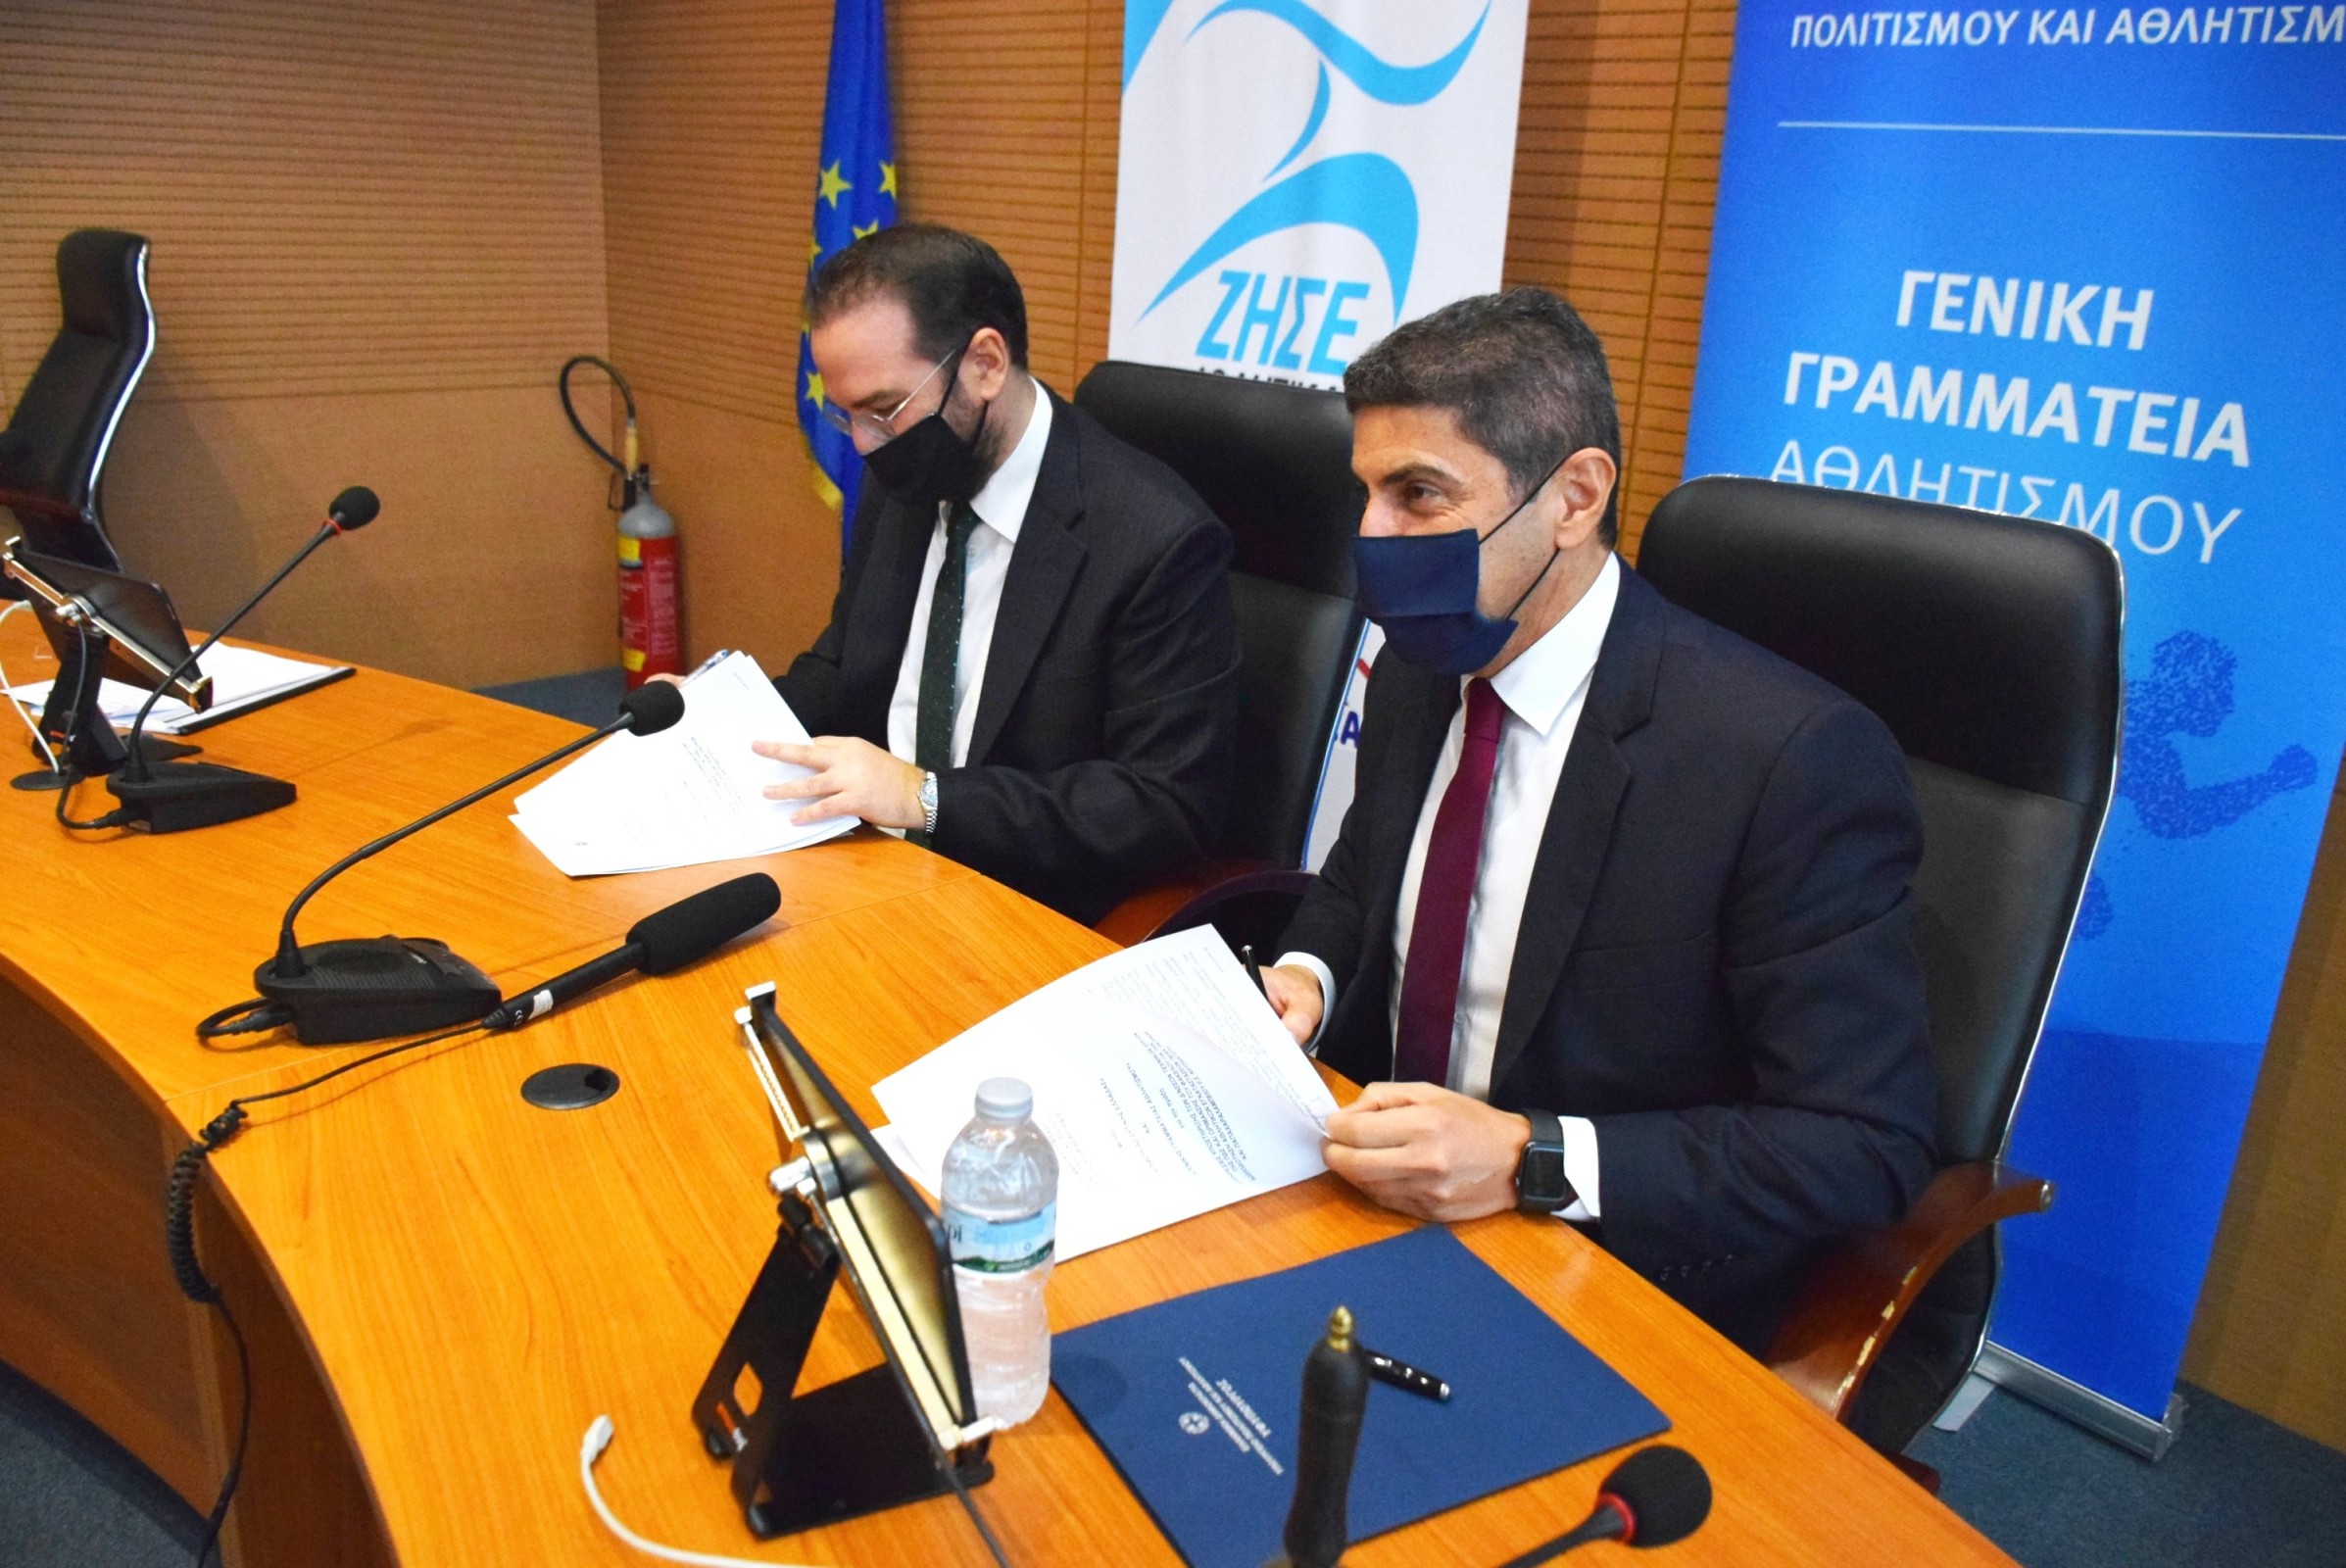 ΠΔΕ: Αυγενάκης και Φαρμάκης υπέγραψαν Προγραμματική Σύμβαση για την ανάπλαση της Αγυιάς, την αναβάθμιση των εγκαταστάσεων του ΠΕΑΚ Πάτρας και του Παπαχαραλάμπειου Ναυπάκτου (Photos- ΒΙΝΤΕΟ)